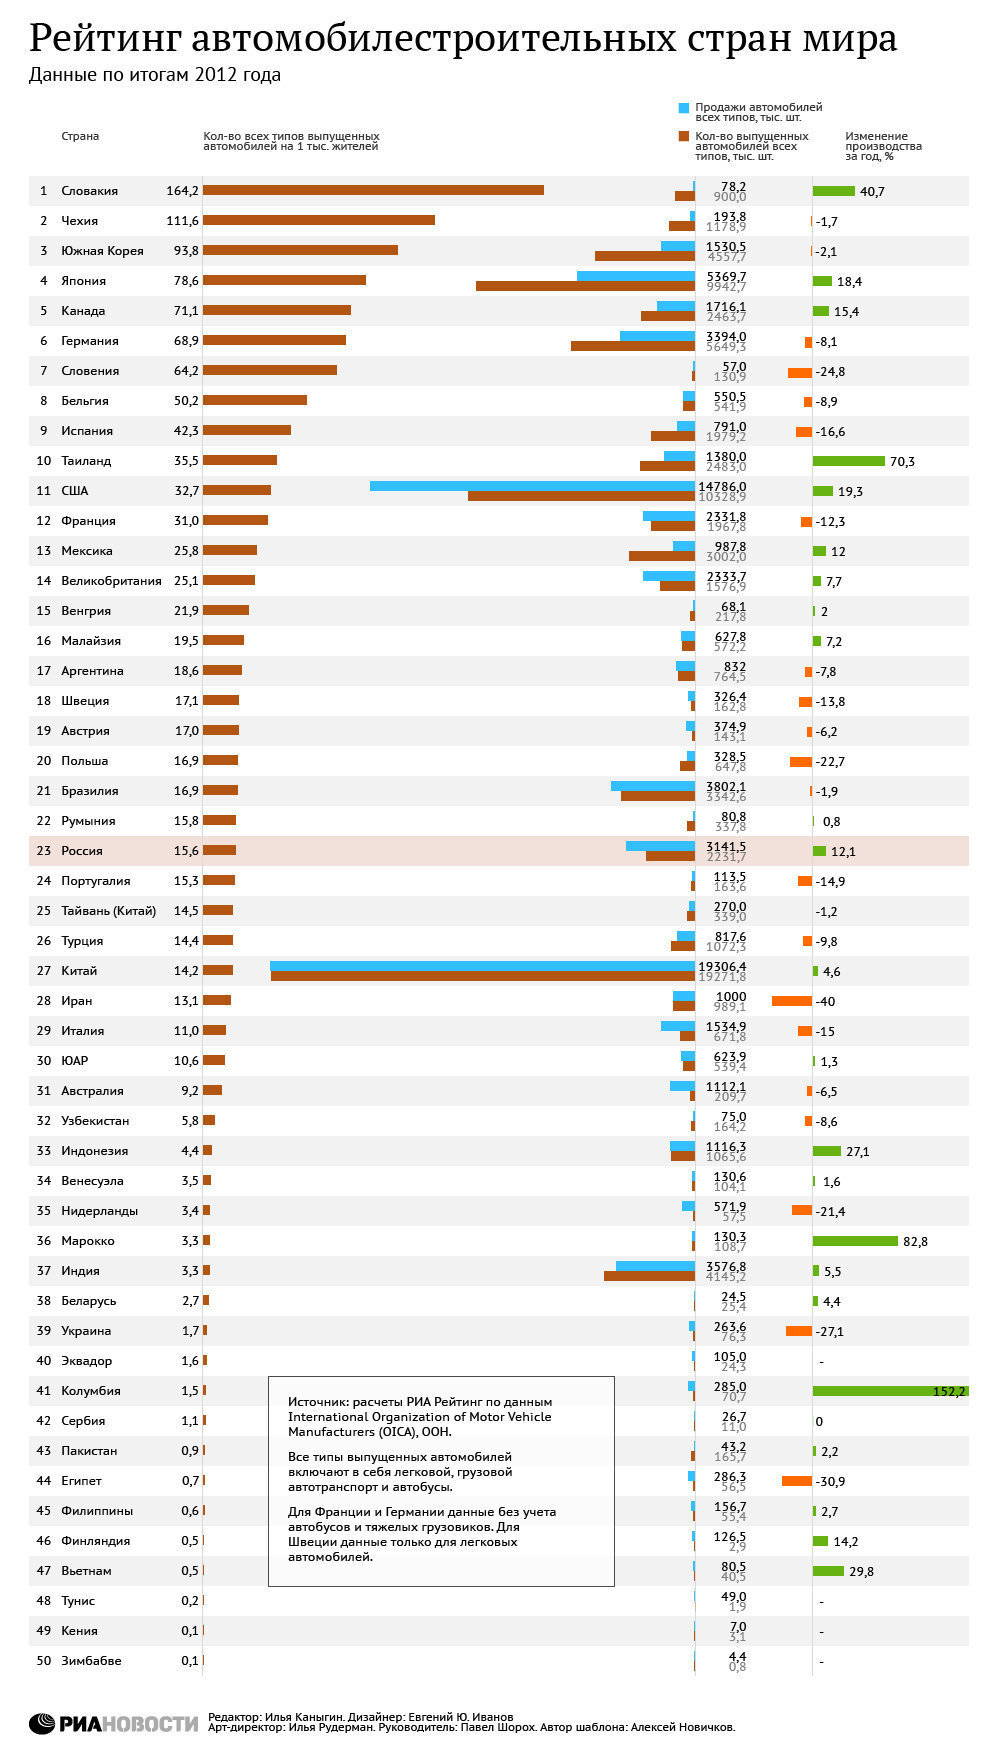 Рейтинг автомобилестроительных стран мира по итогам 2012 года